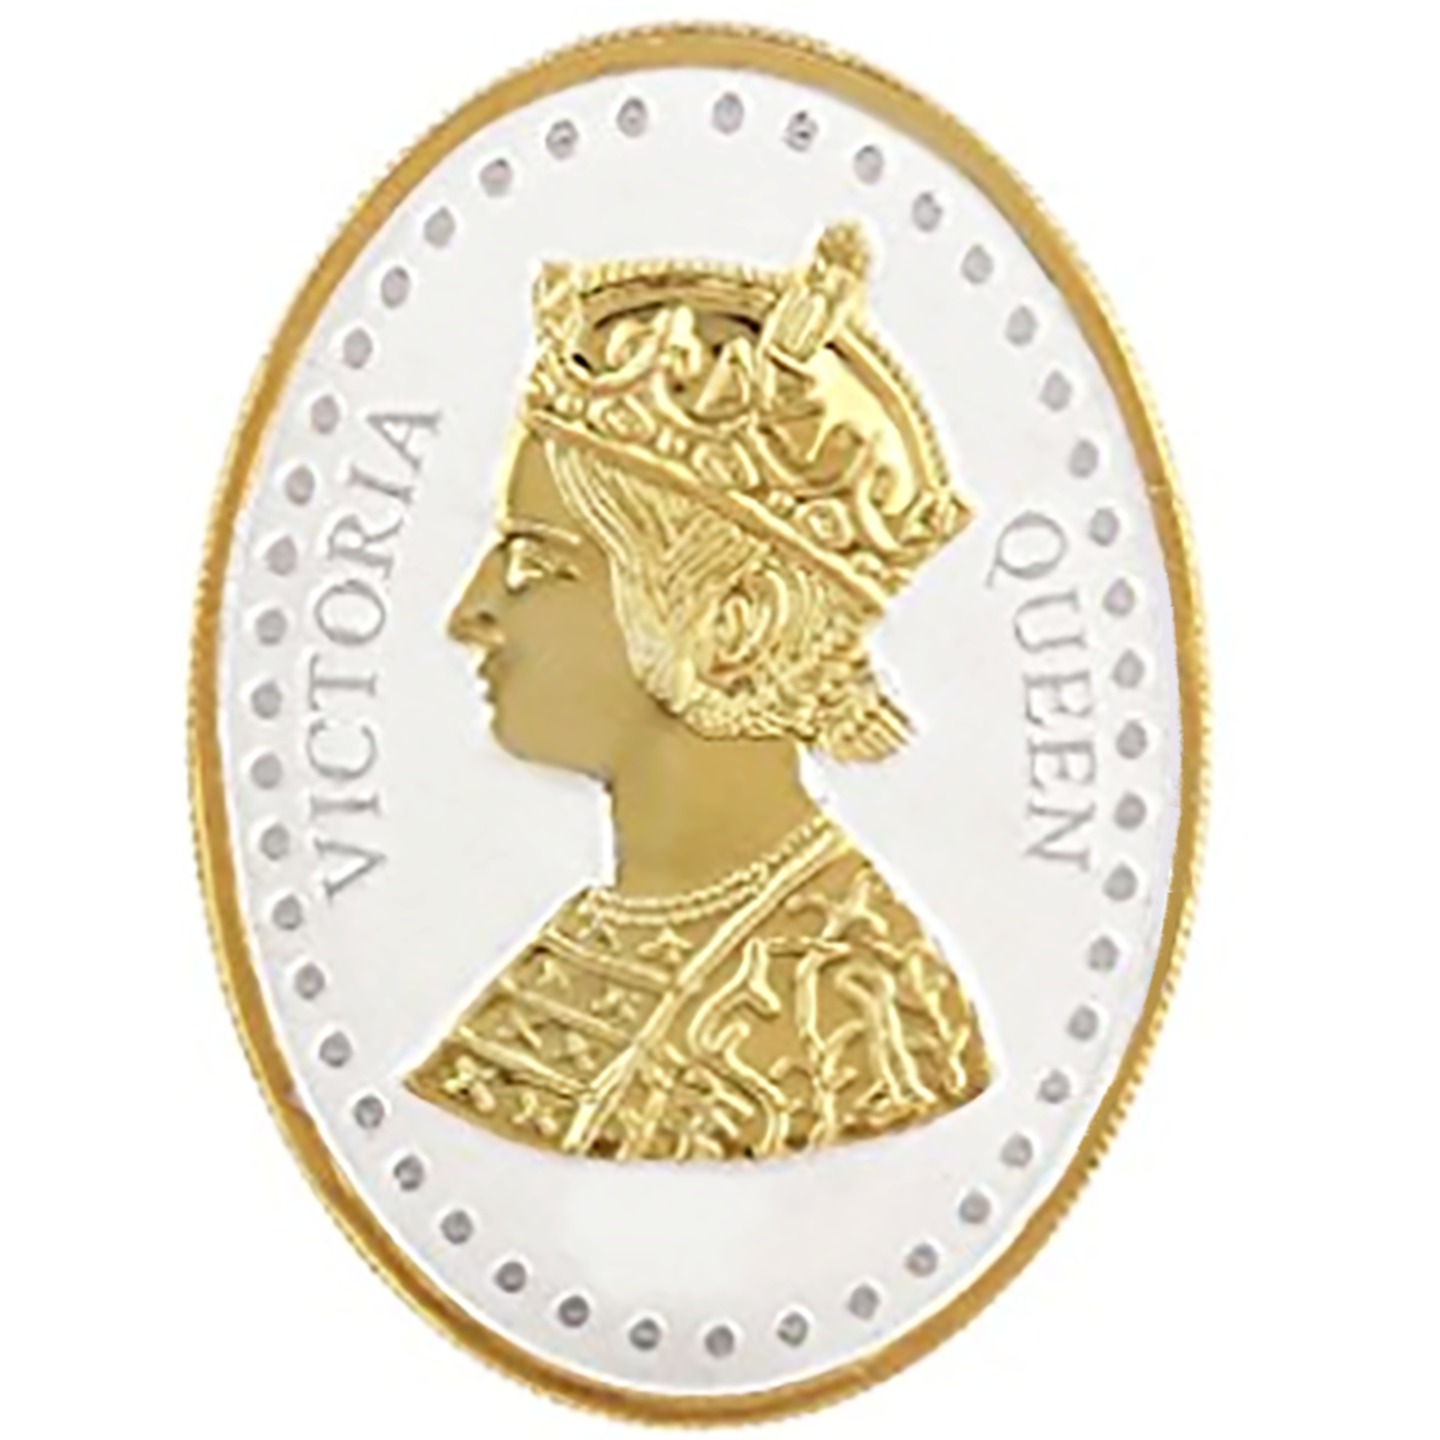 Silver Coin Queen Victoria 24 Kt Gold Plated 100 Gm 999 BIS Hallmarked